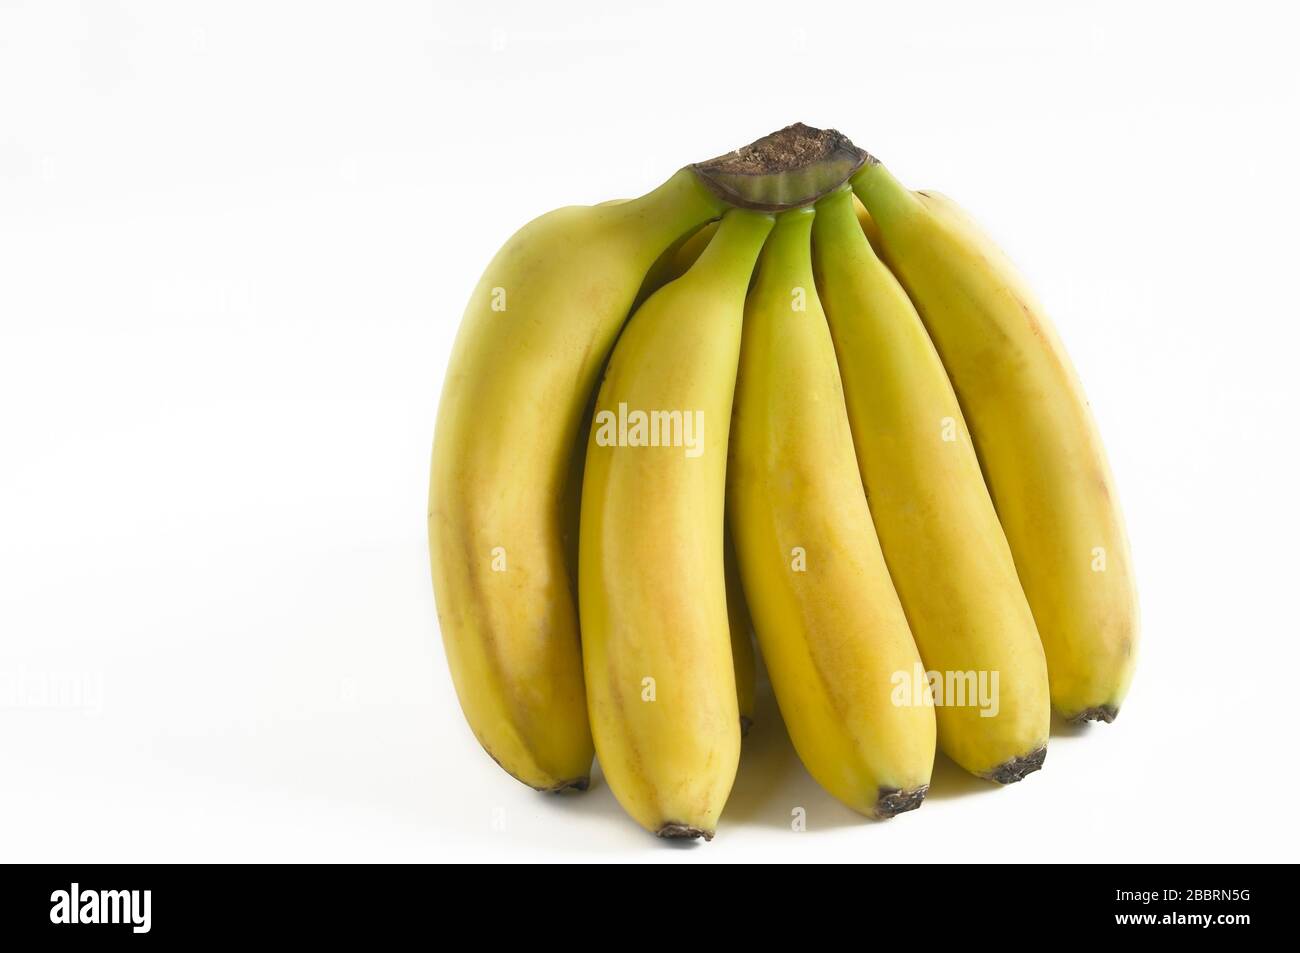 Gruppo di banane delle isole Canarie Spagna. Foto Stock